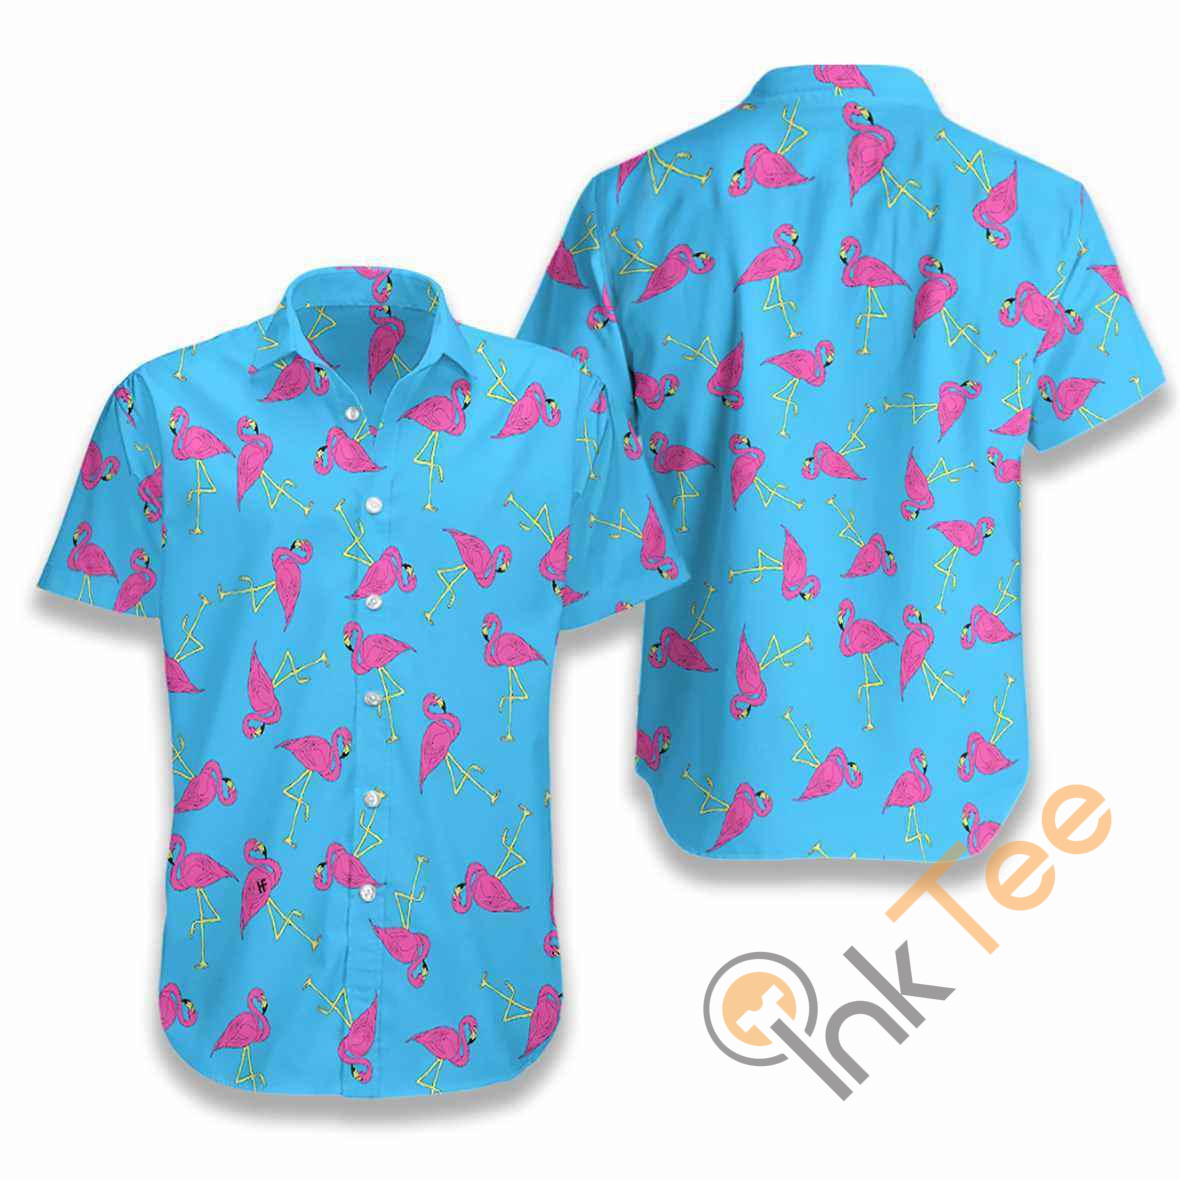 Flamingo Tropical Hawaiian shirts